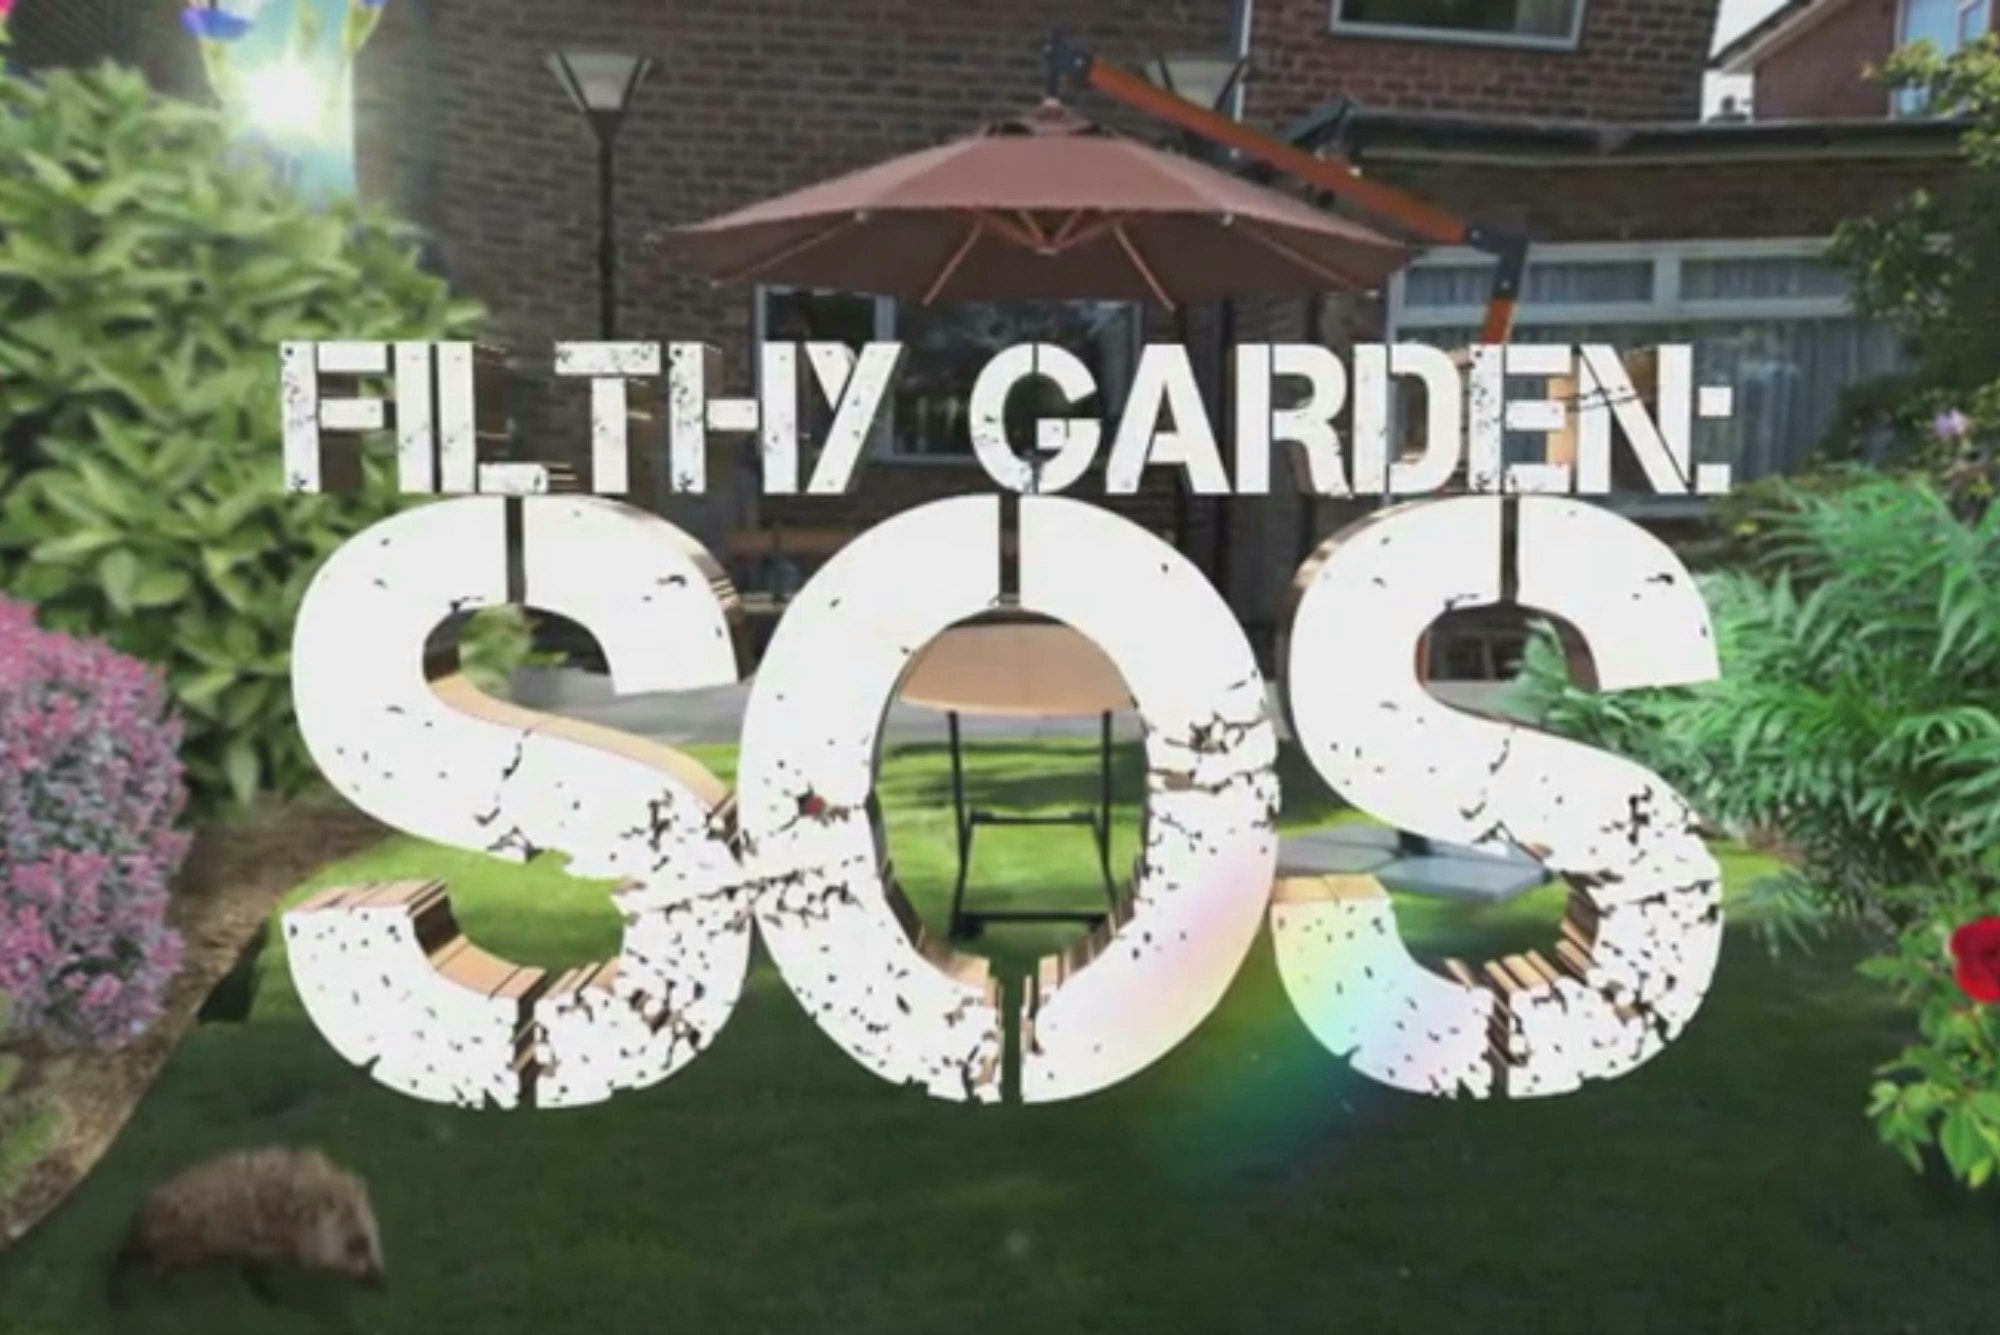 Filthy Garden SOS